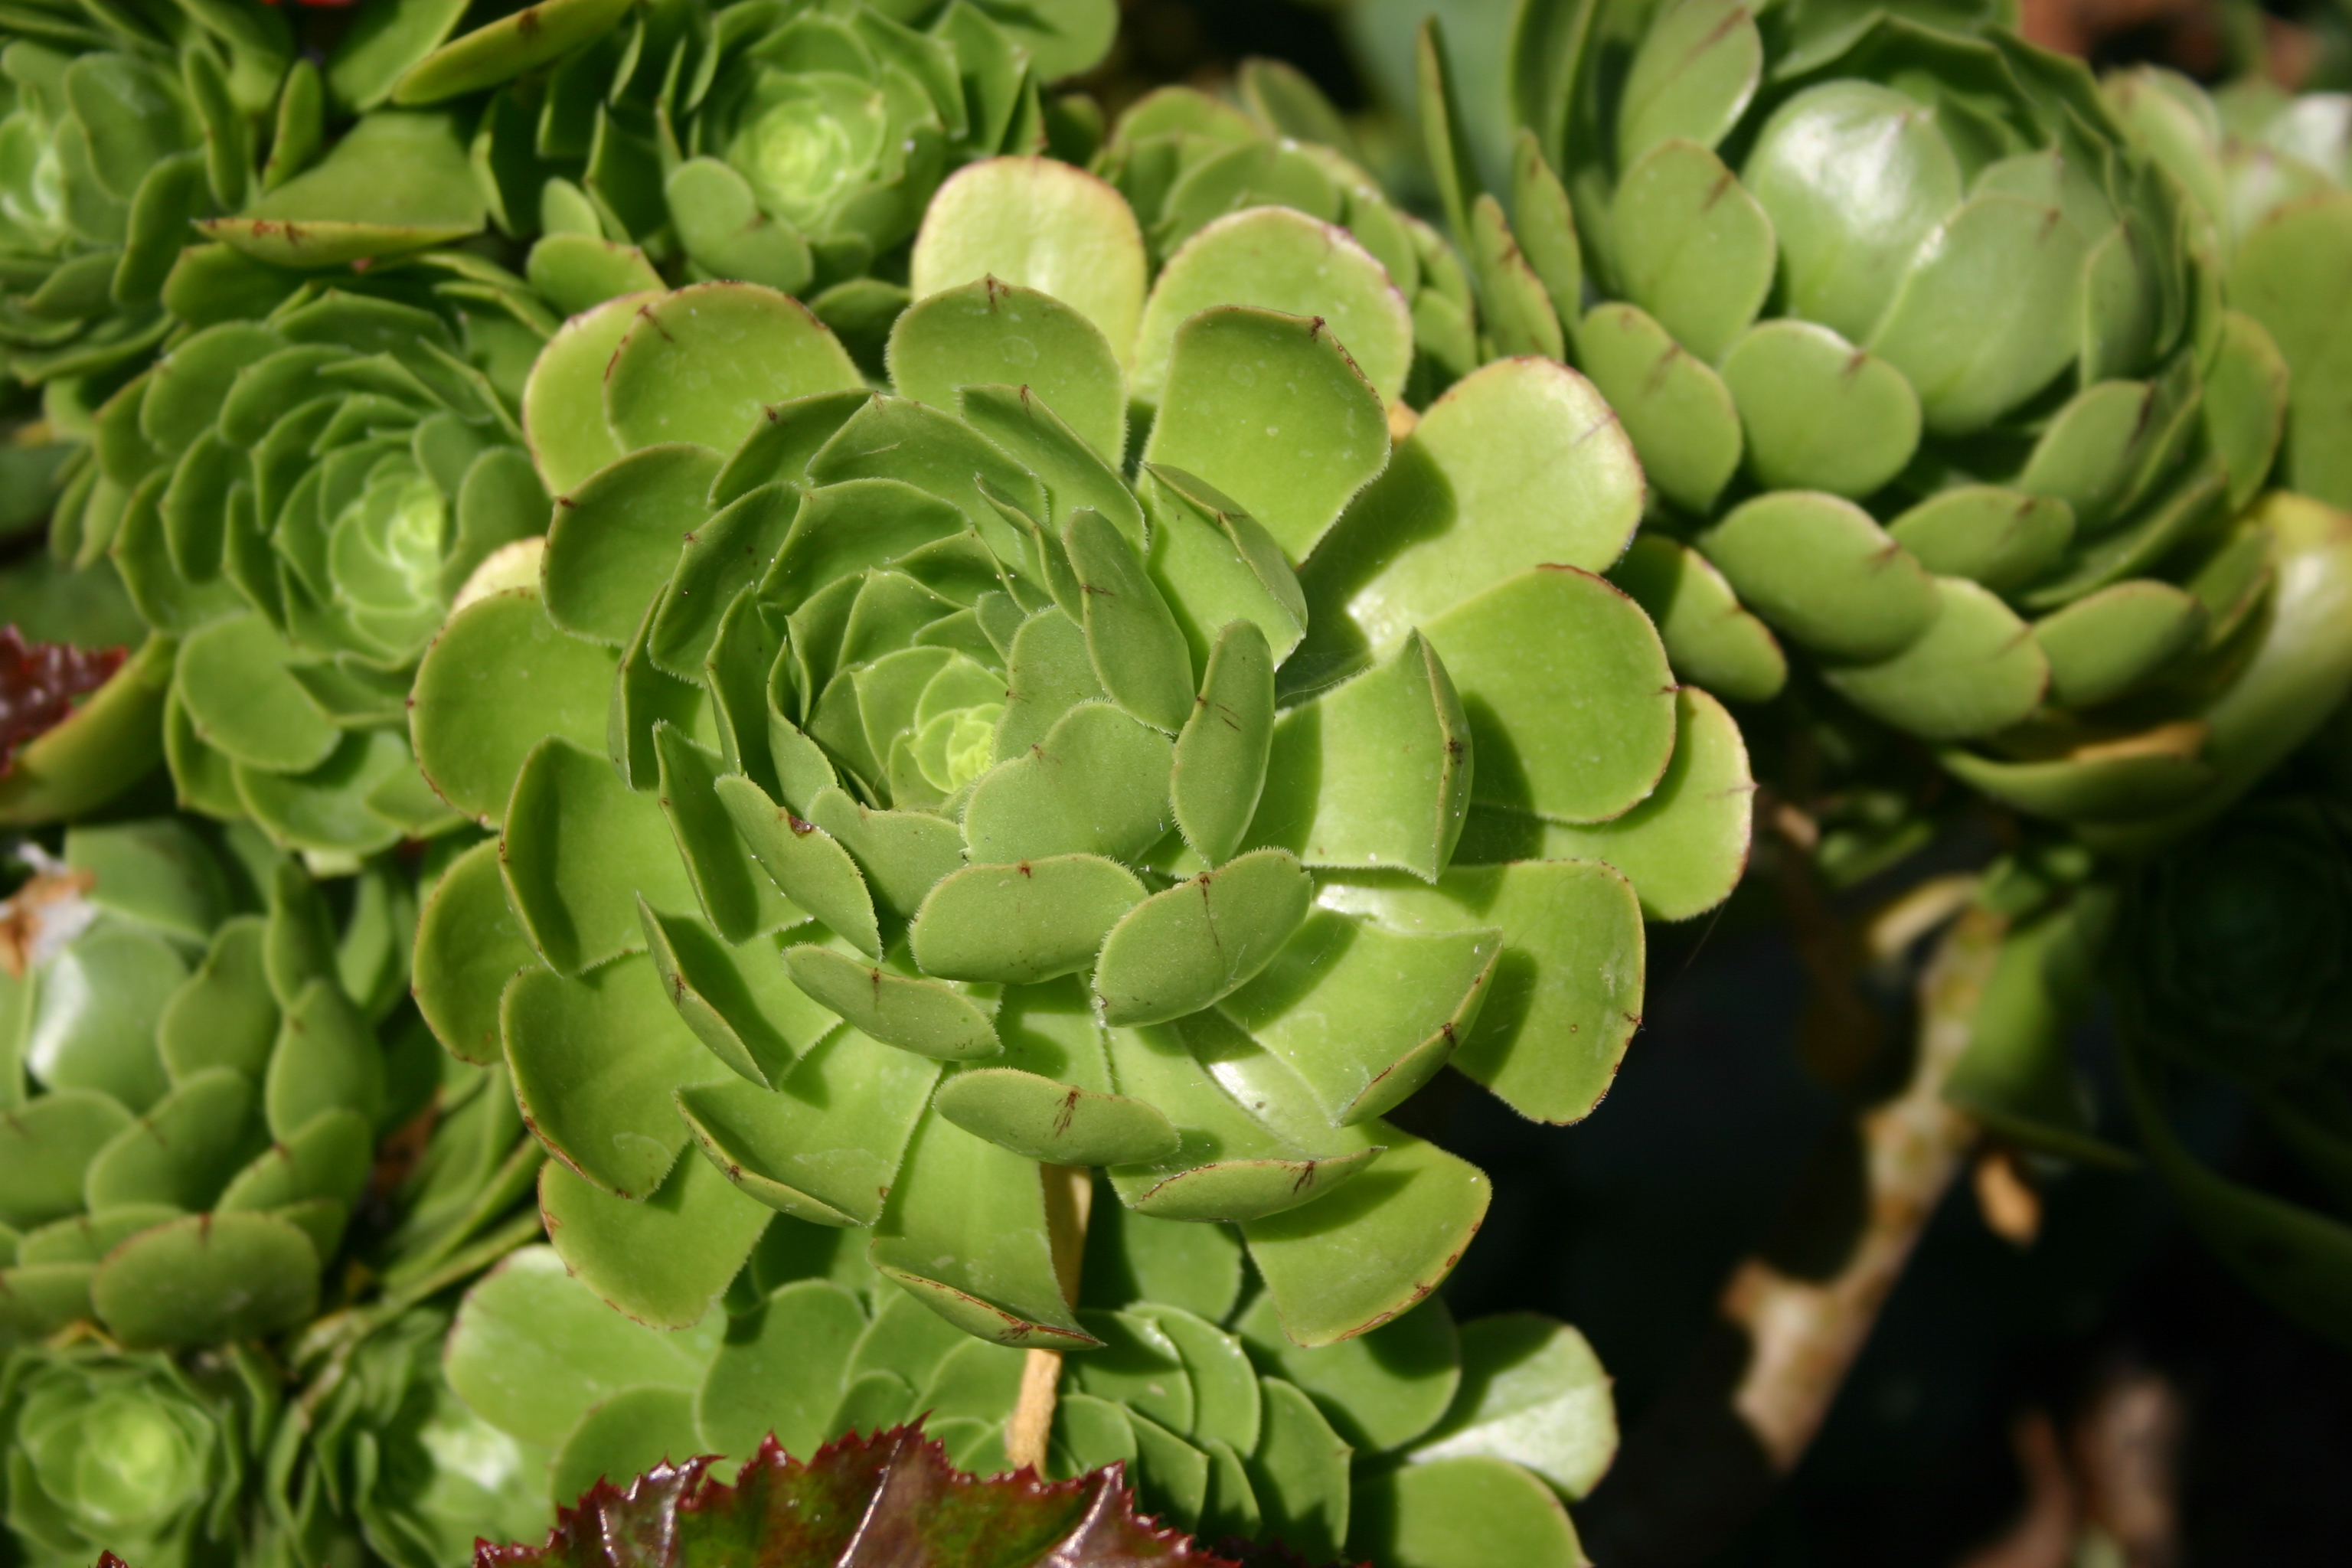 Green succulent plants that resemble artichokes.